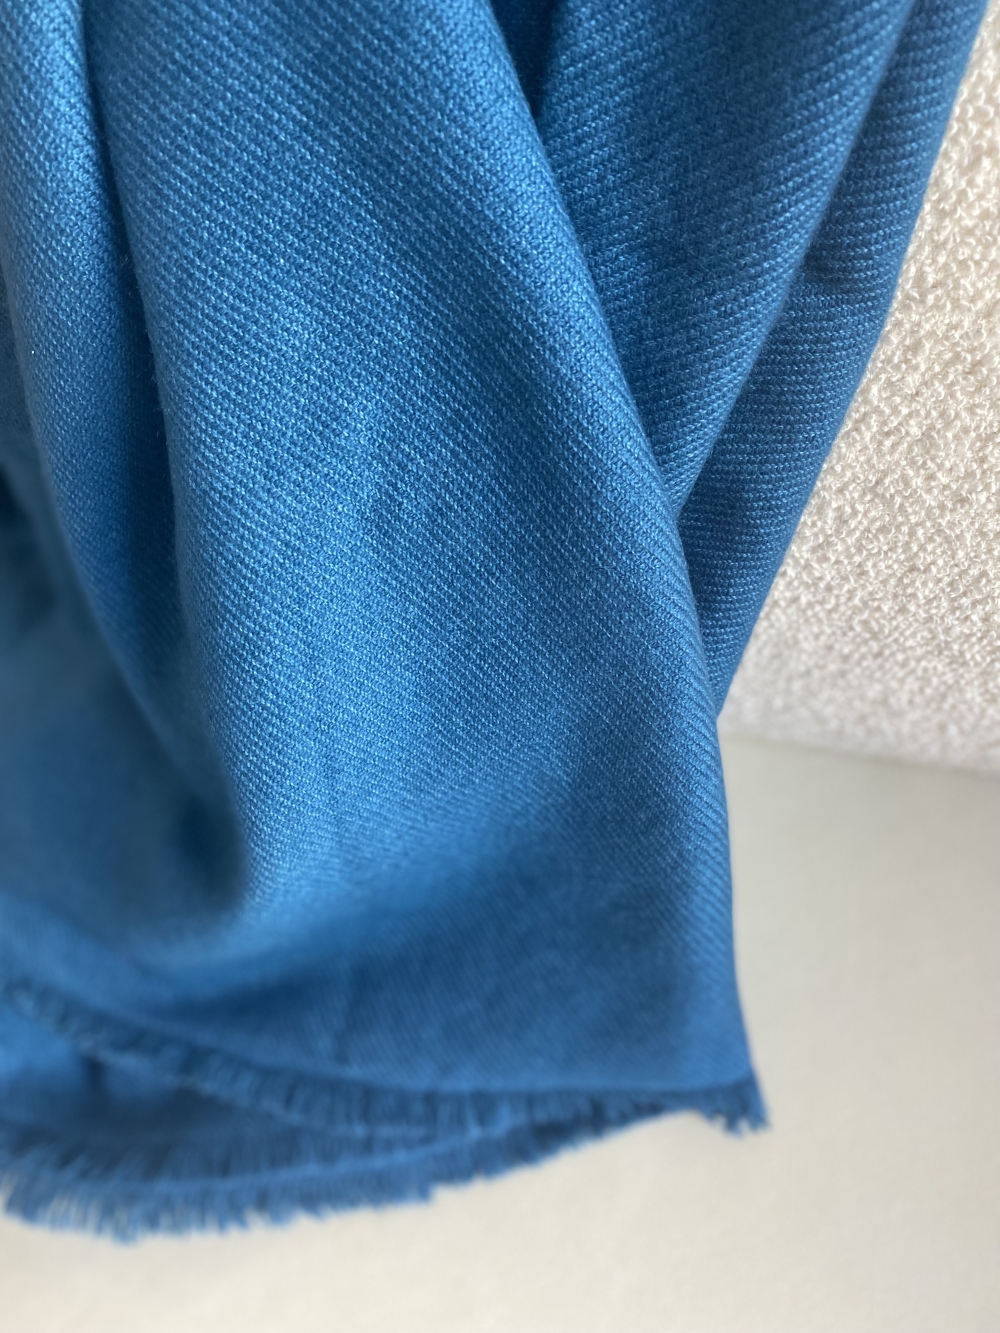 Cachemire accessoires couvertures plaids toodoo plain s 140 x 200 bleu canard 140 x 200 cm